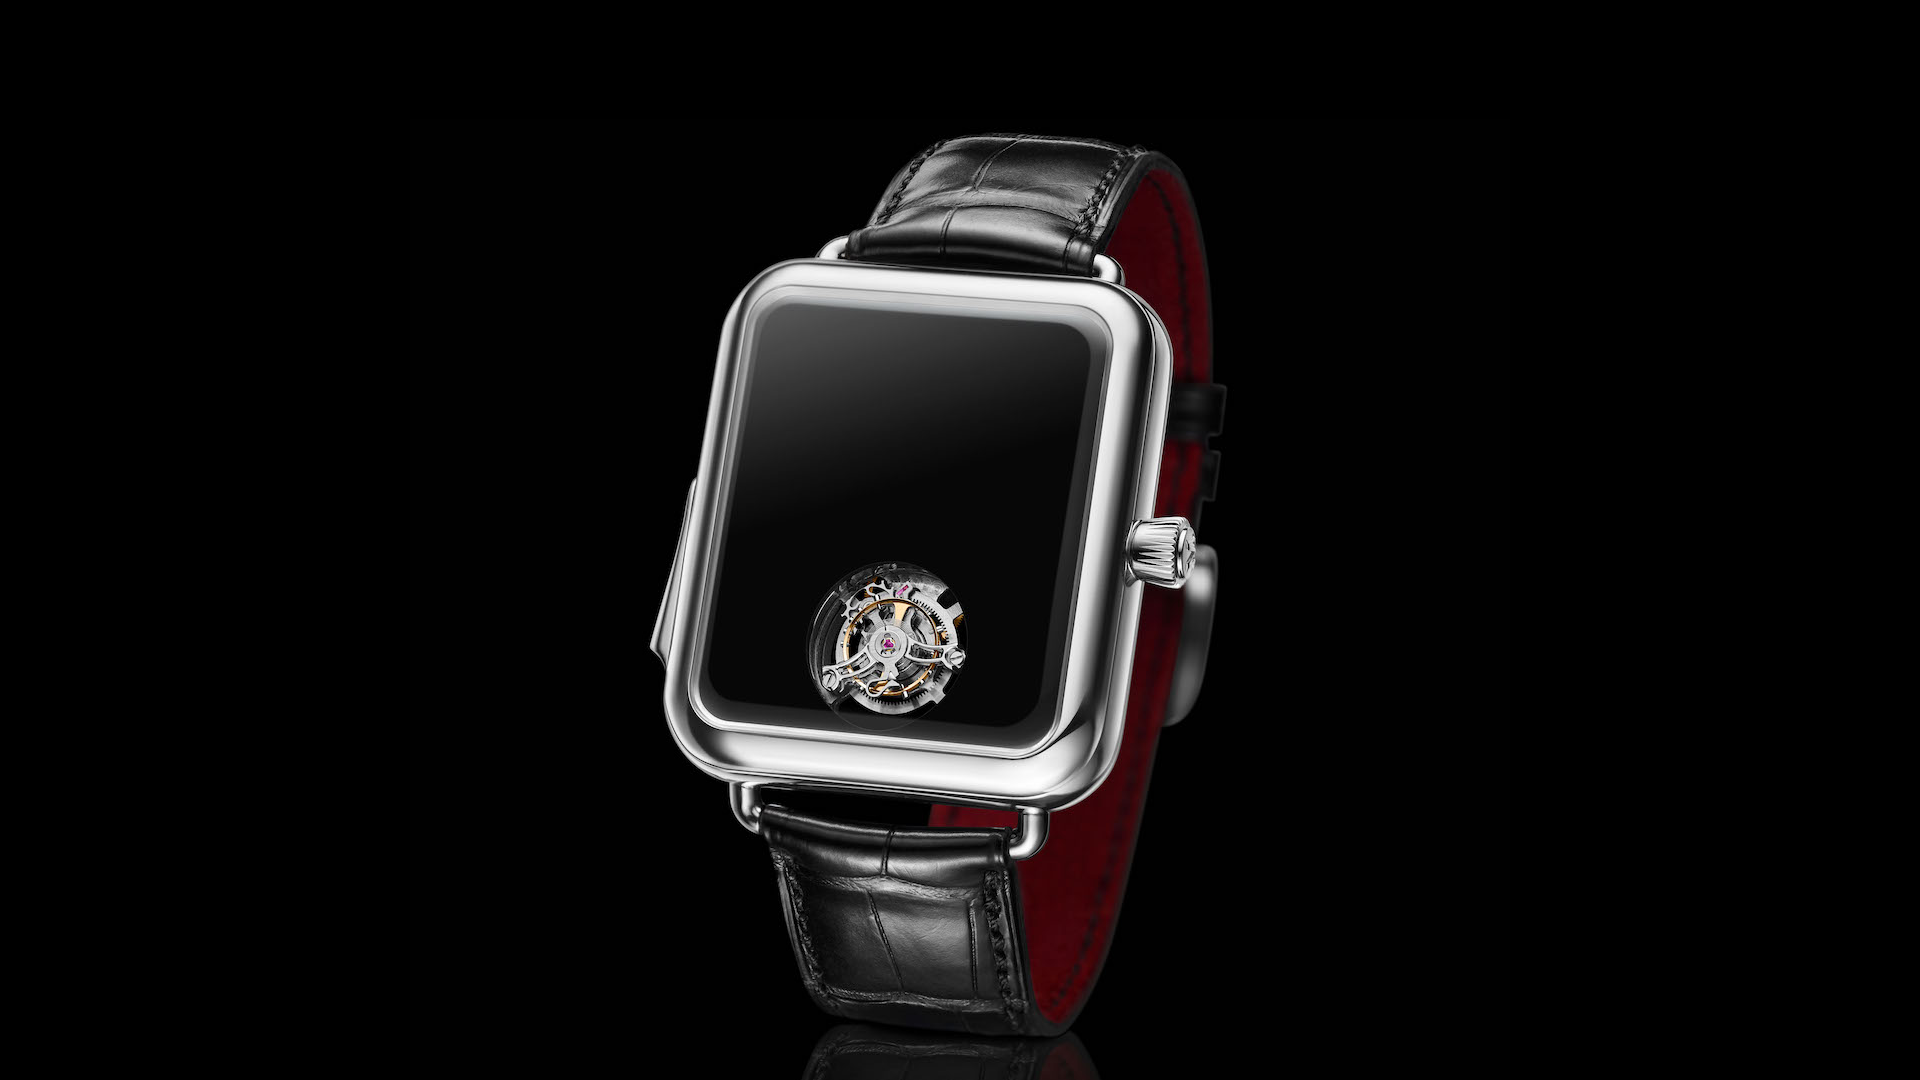 Design Inspiration: H. Moser & Cie. Swiss Alp Watch Concept Black